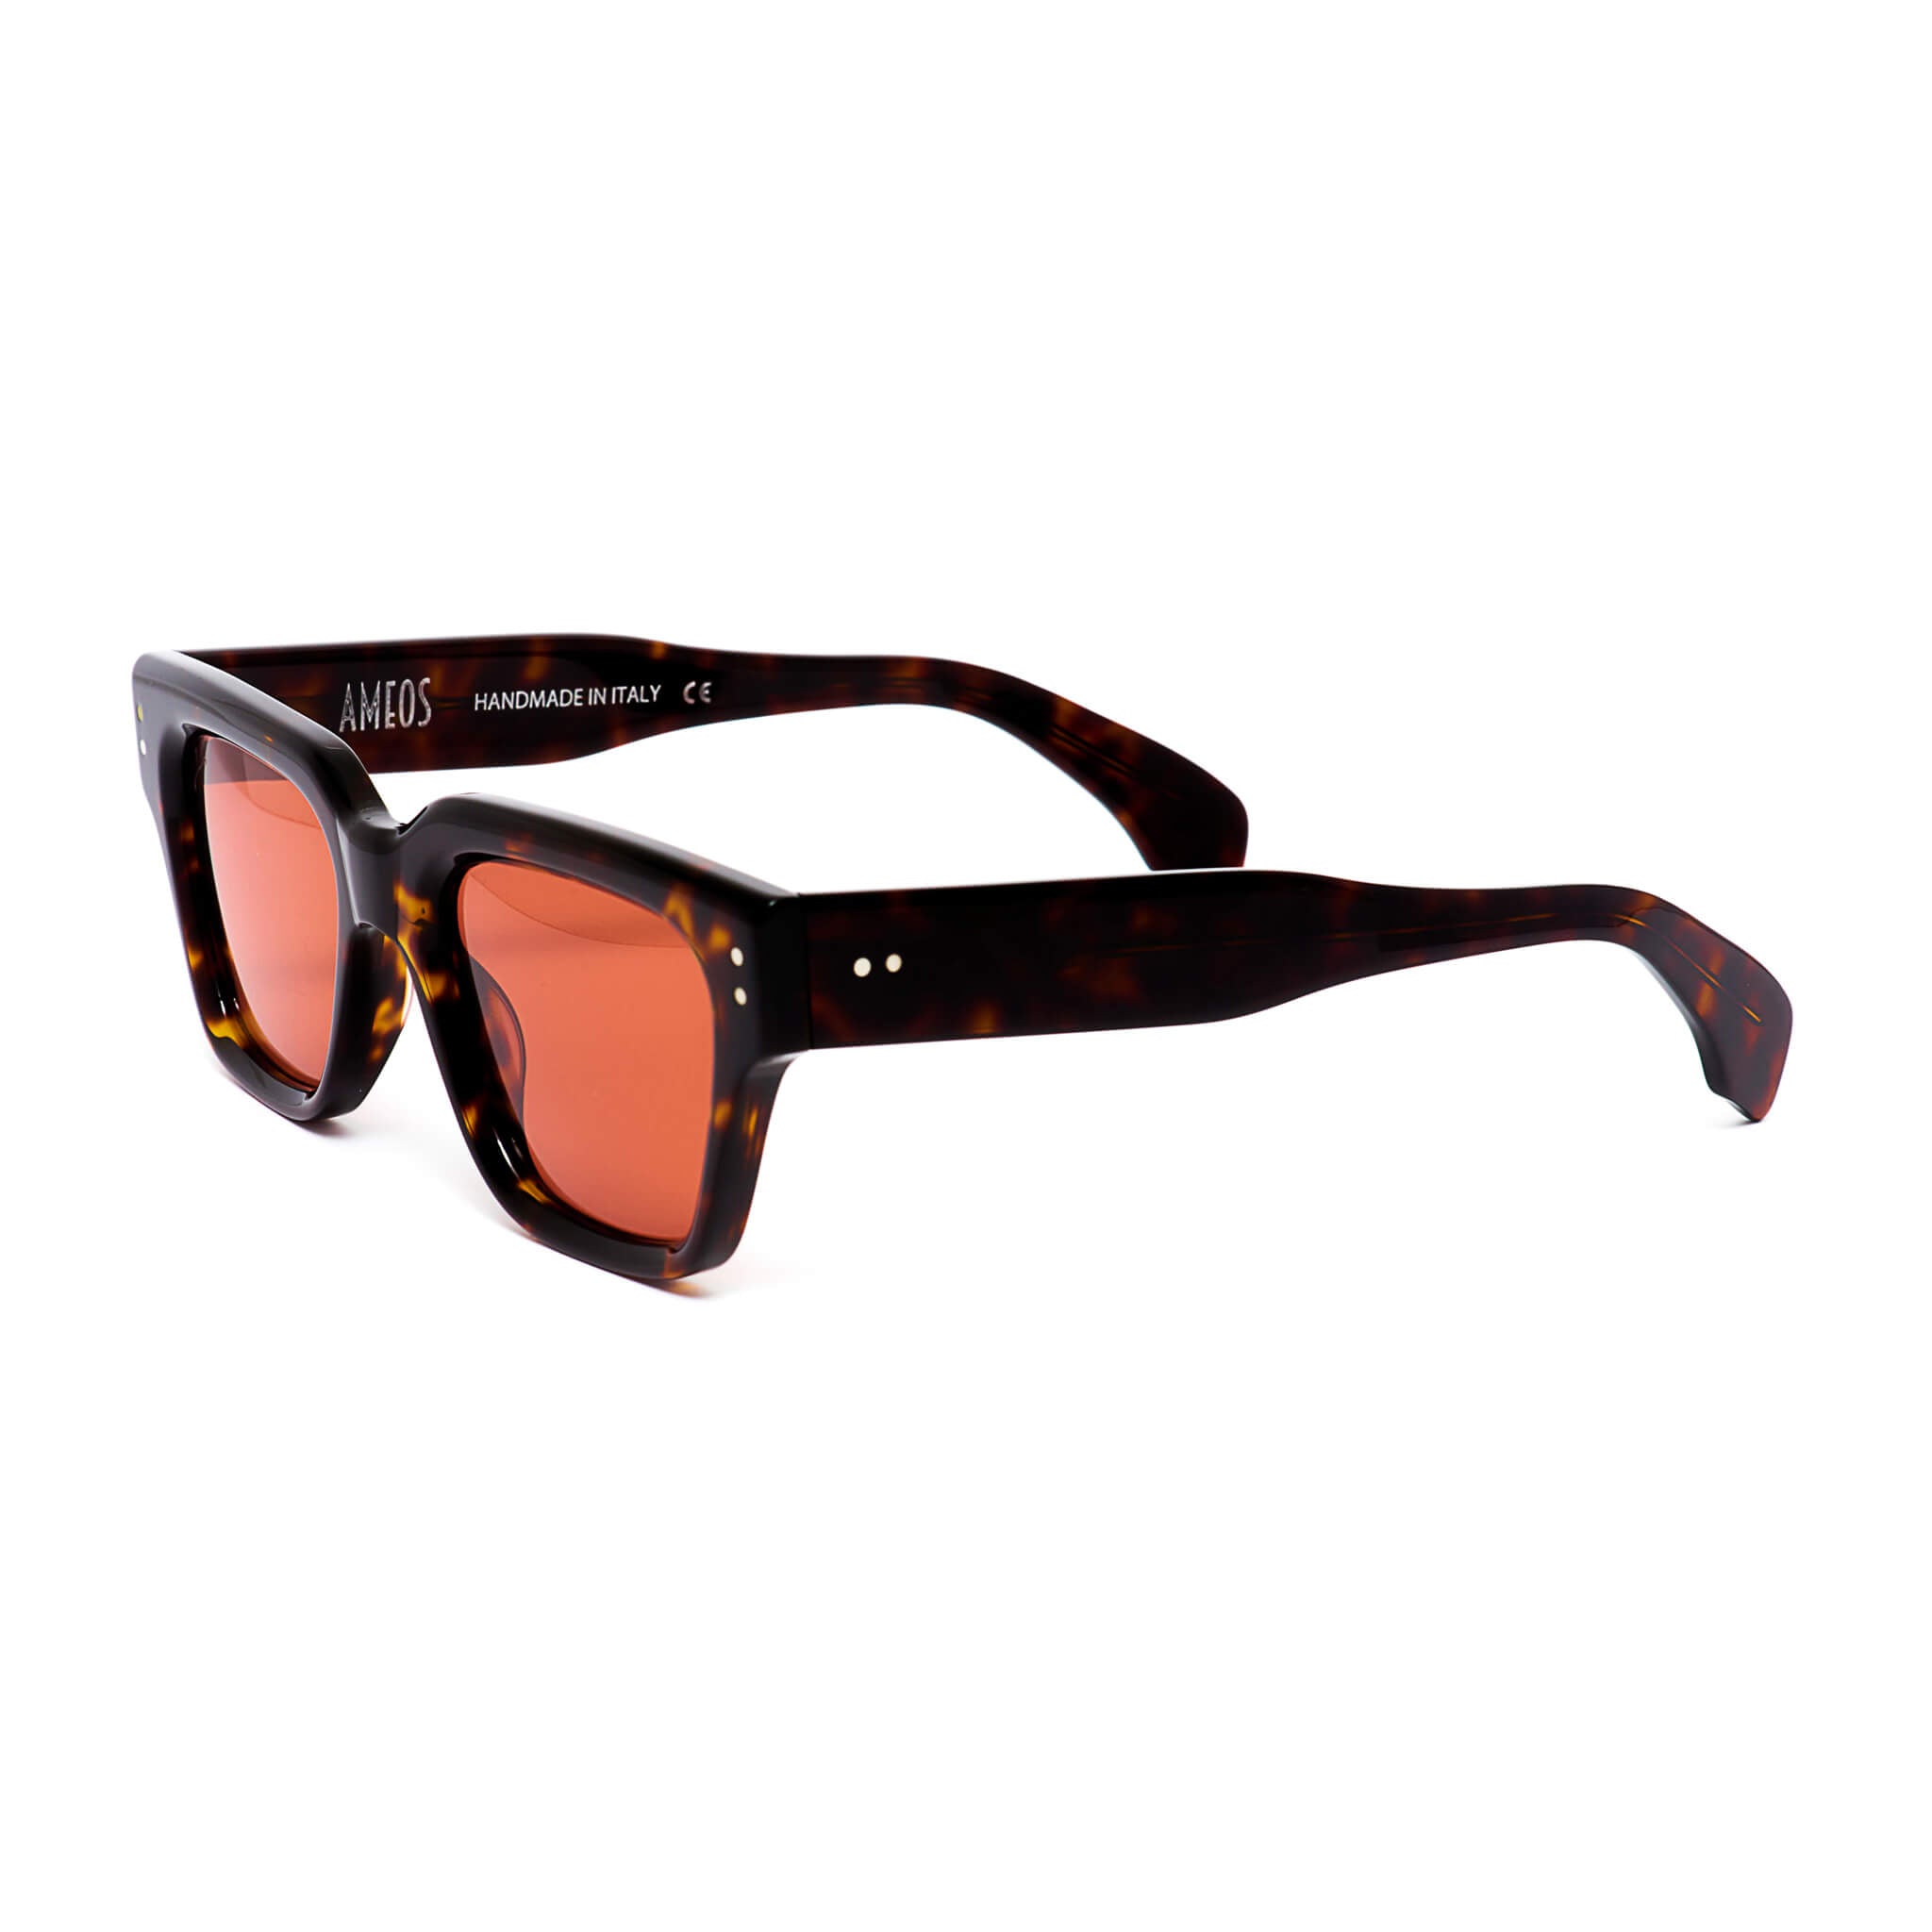 Tortoise frames sunglasses with red lenses handmade in italy